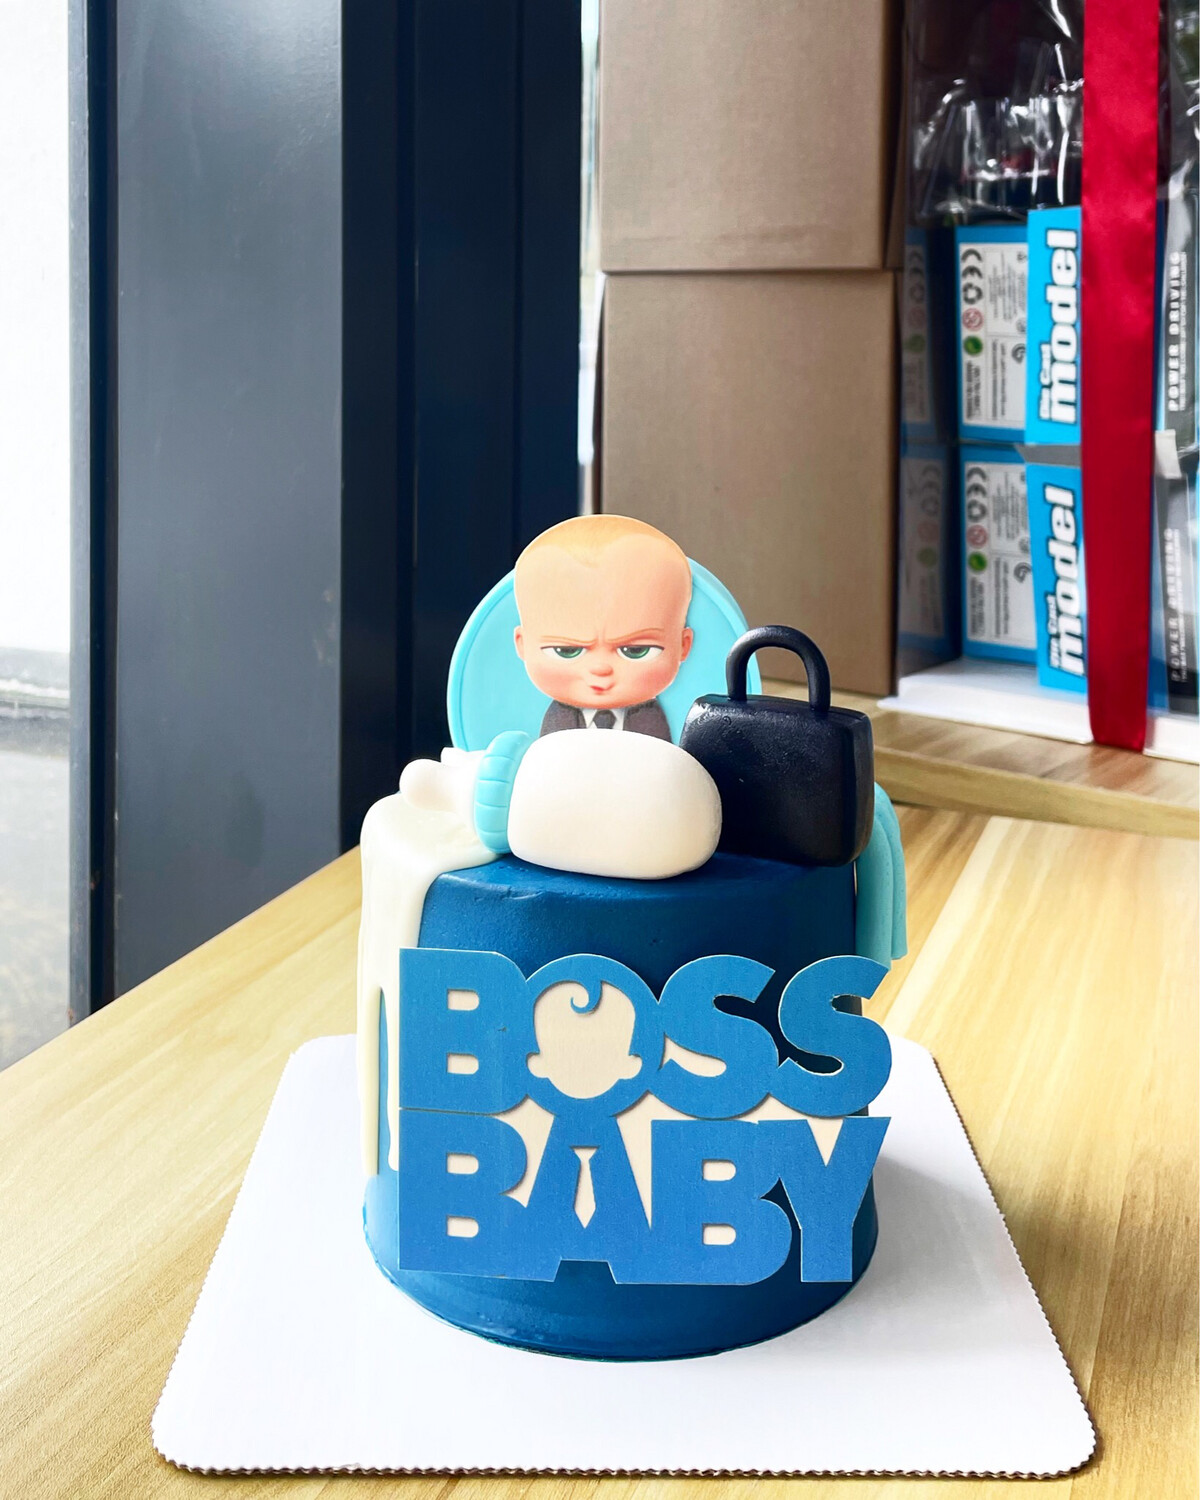 Baby Boss 1 Cake